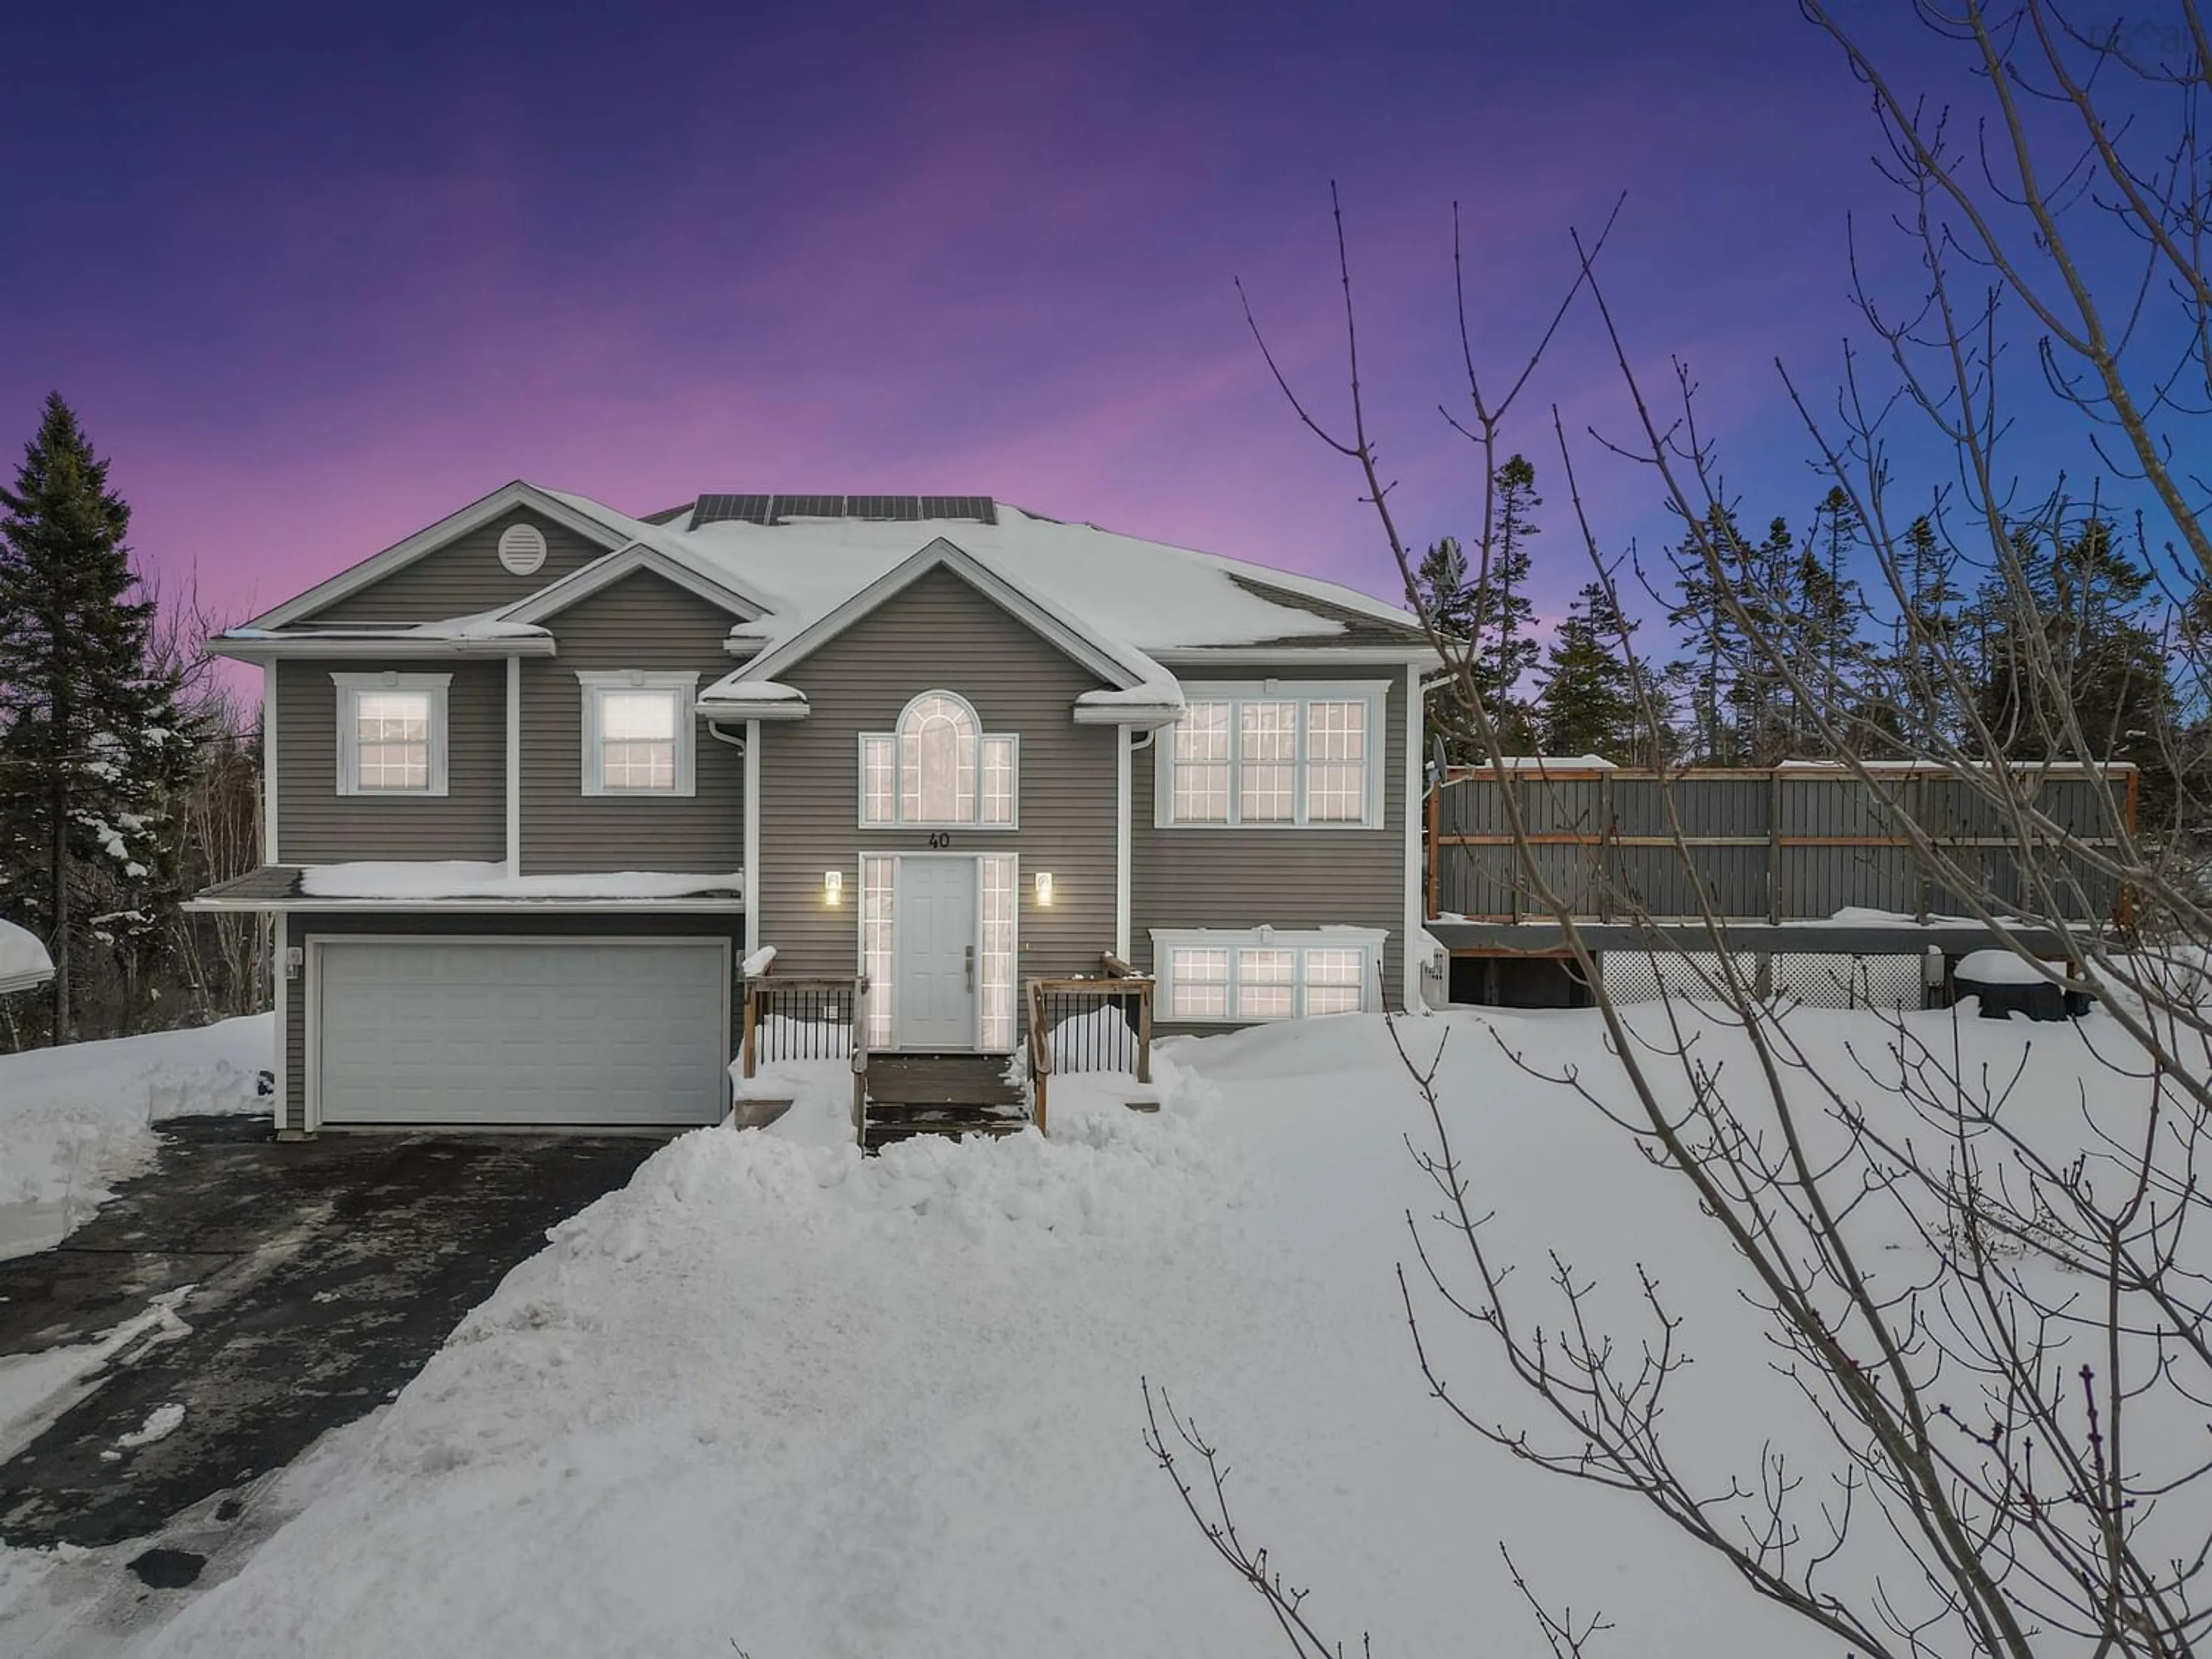 Home with stucco exterior material for 40 Beaverbrook Dr, Fall River Nova Scotia B2T 1S4